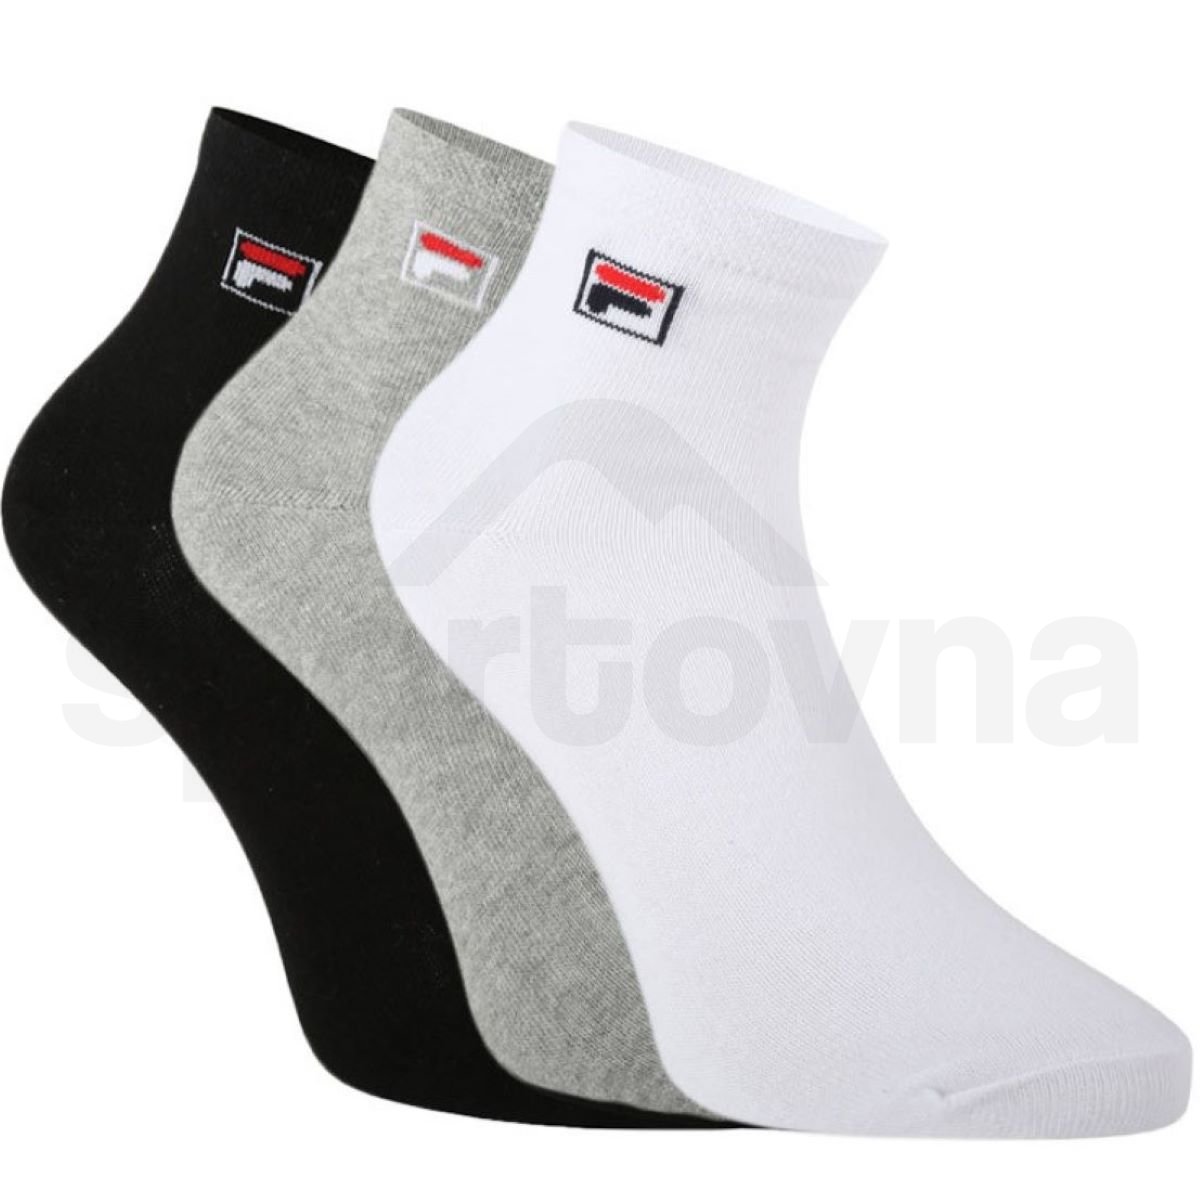 Ponožky Fila Quarter Plain 3 Pack - černá/šedá/bílá